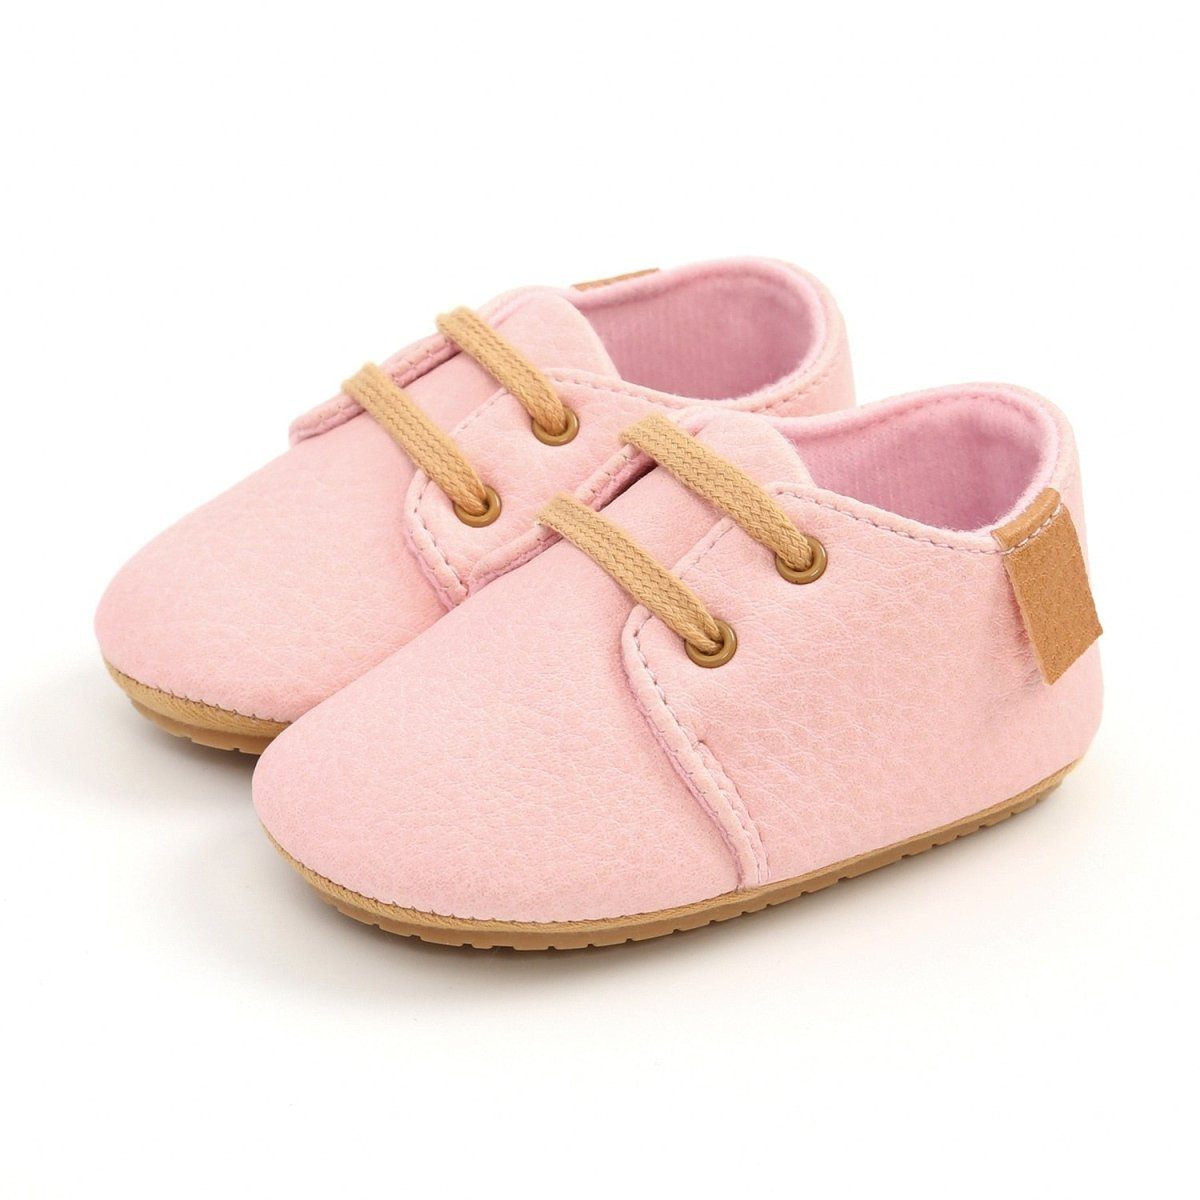 Infant Multicolor Retro Leather Shoes Infant Multicolor Retro Leather Shoes Baby Bubble Store Pink 0-6 Months 